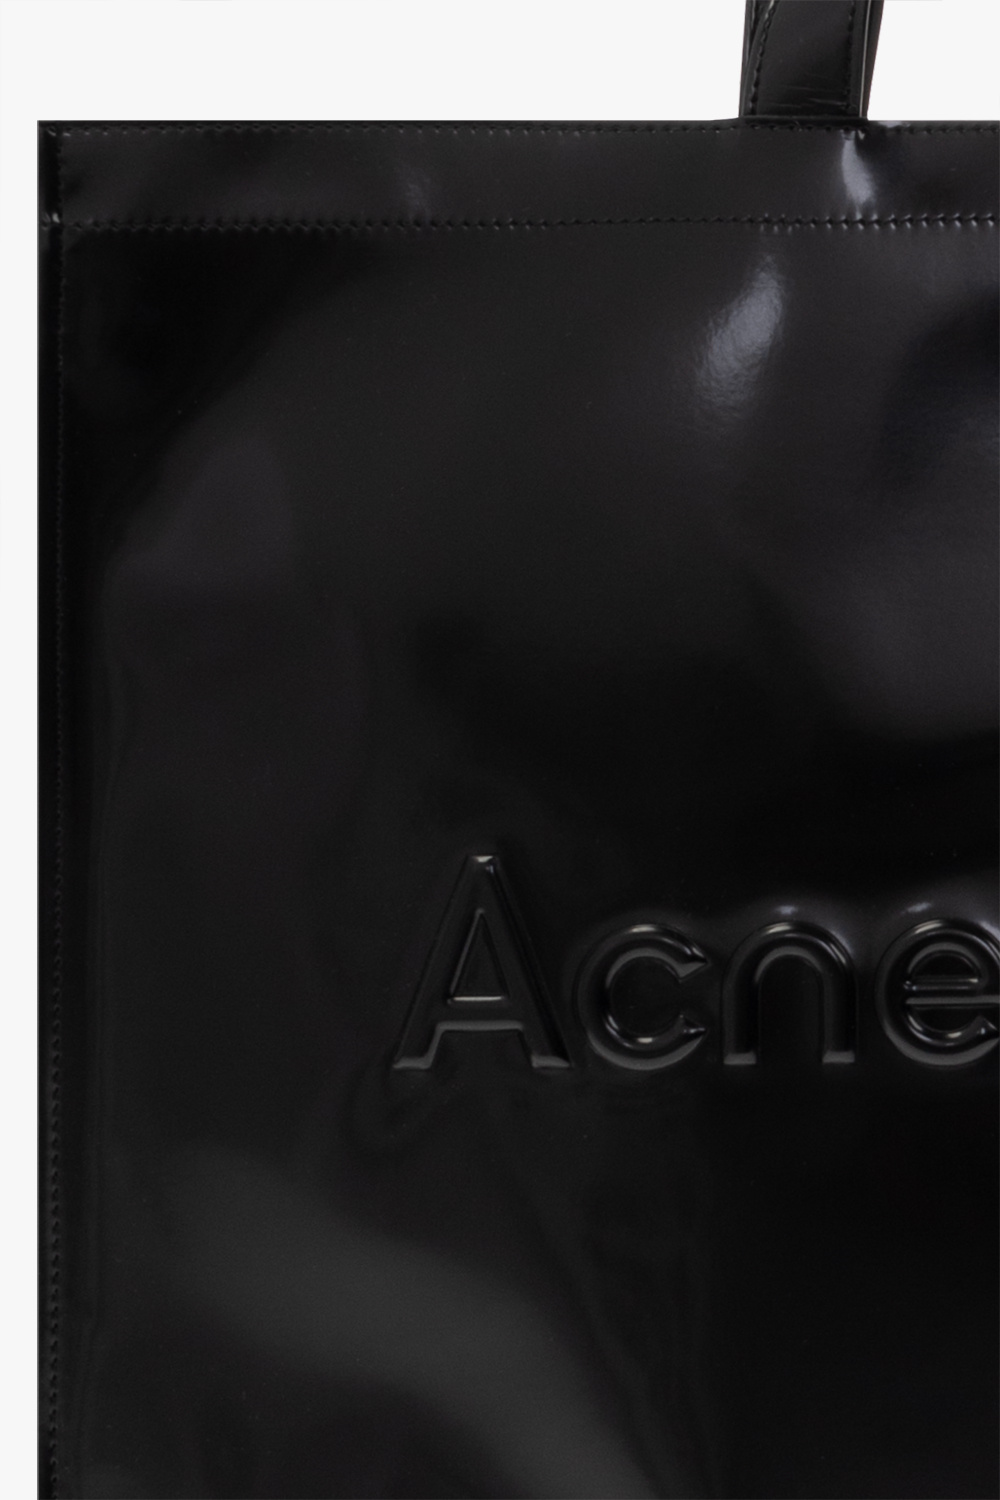 Acne Studios Shopper bag Kids with logo